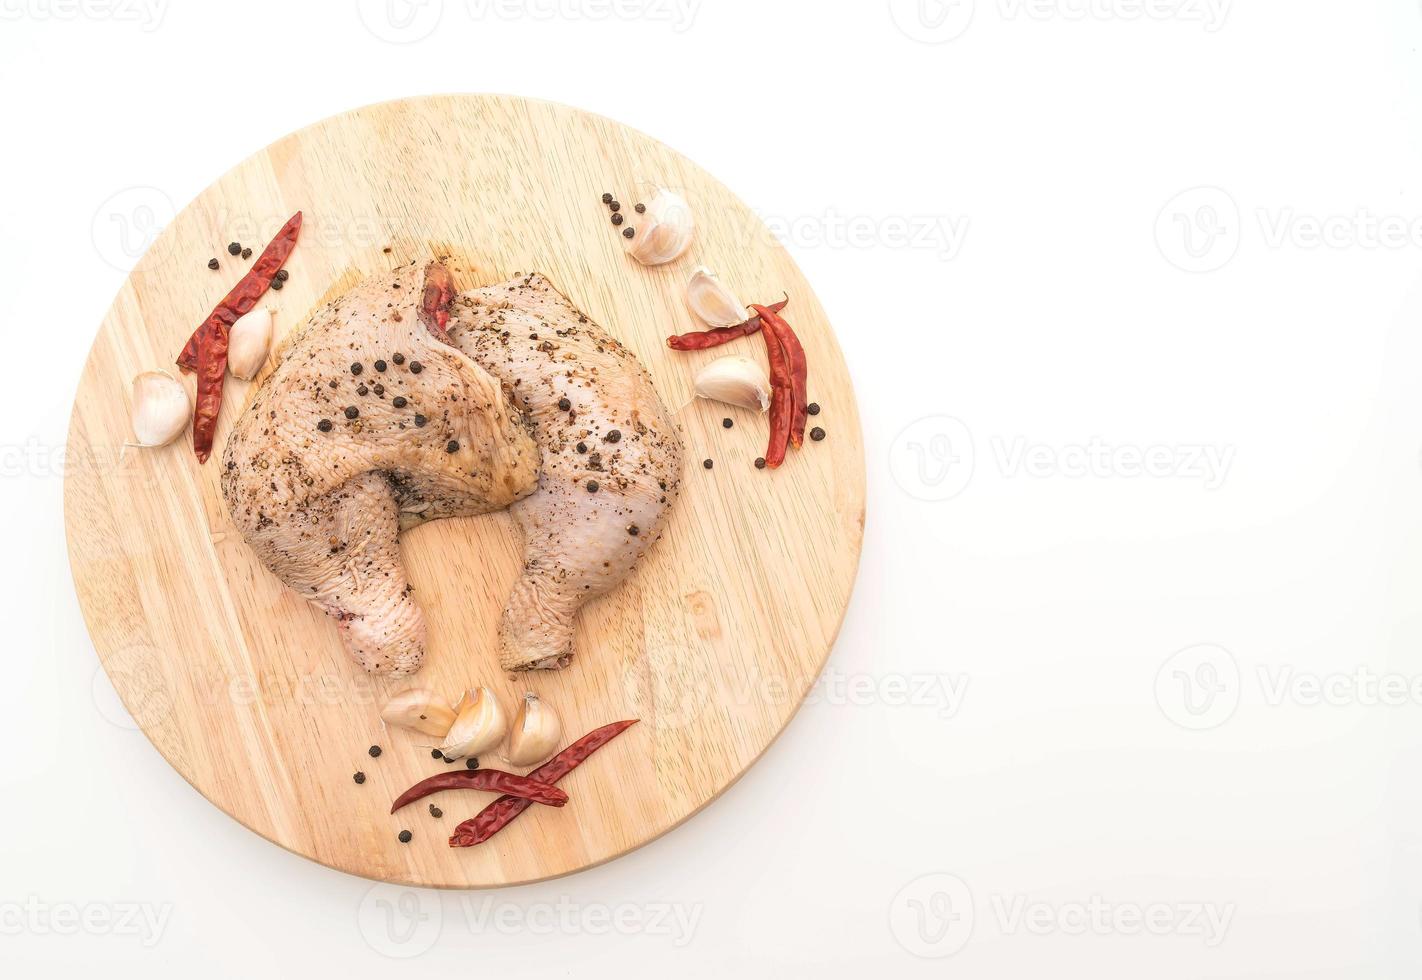 cuisse de poulet marinée avec sauce, poivrons noirs, ail et piment séché sur planche de bois photo